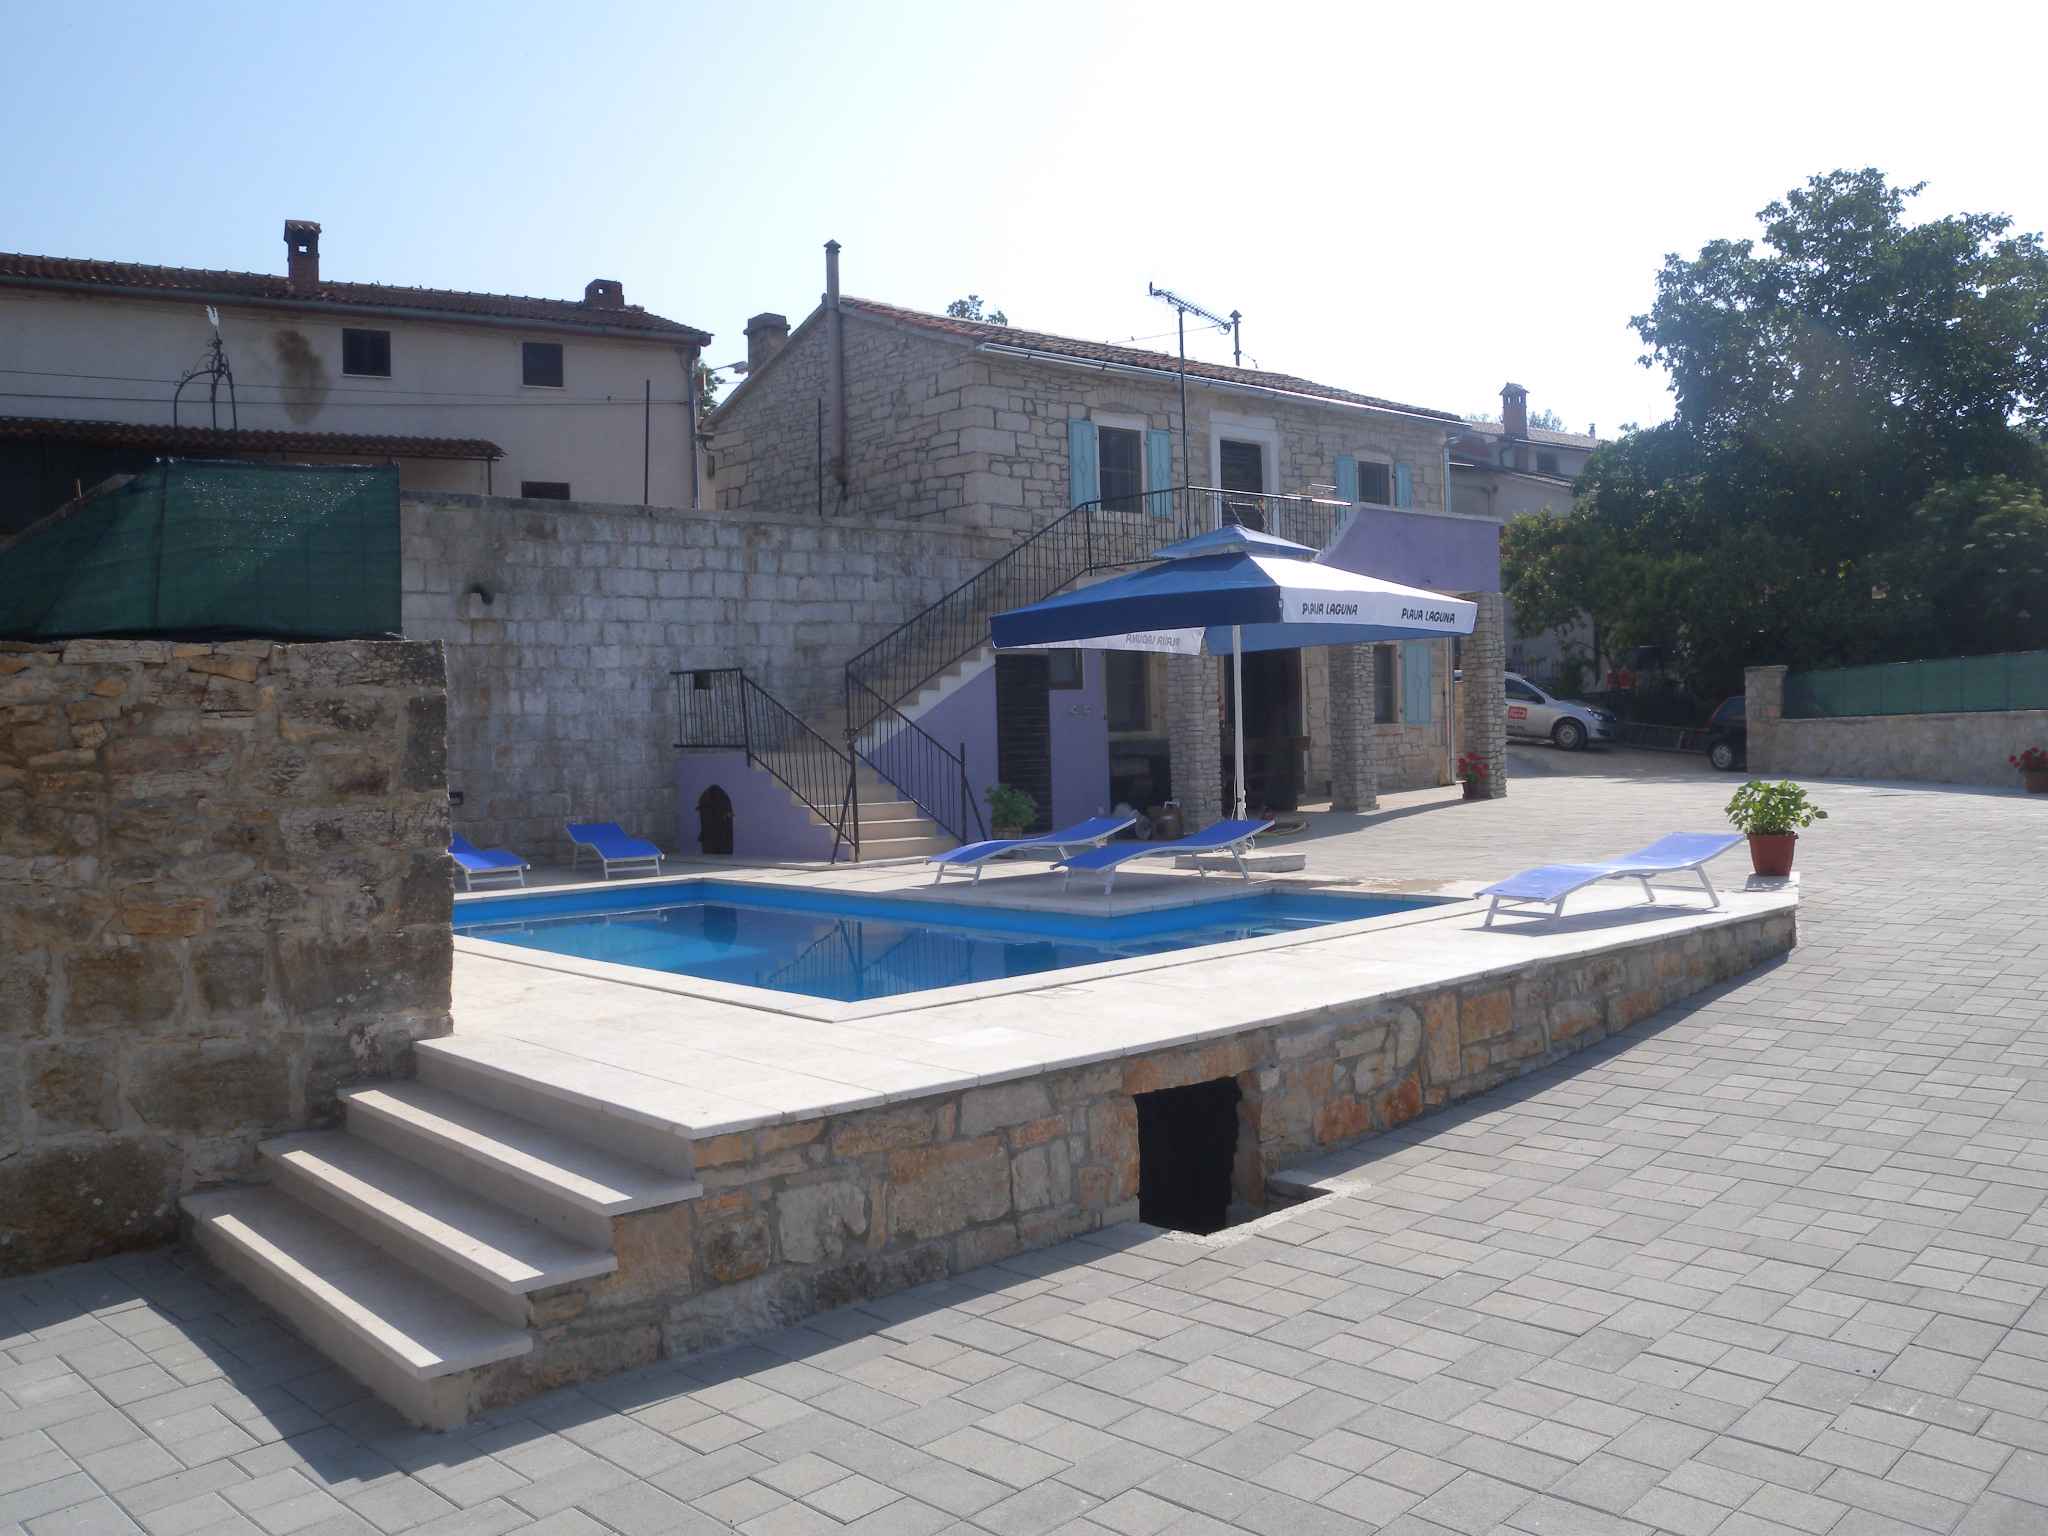 Ferienhaus mit Pool in typischen istrischen Dorf Ferienhaus in Kroatien